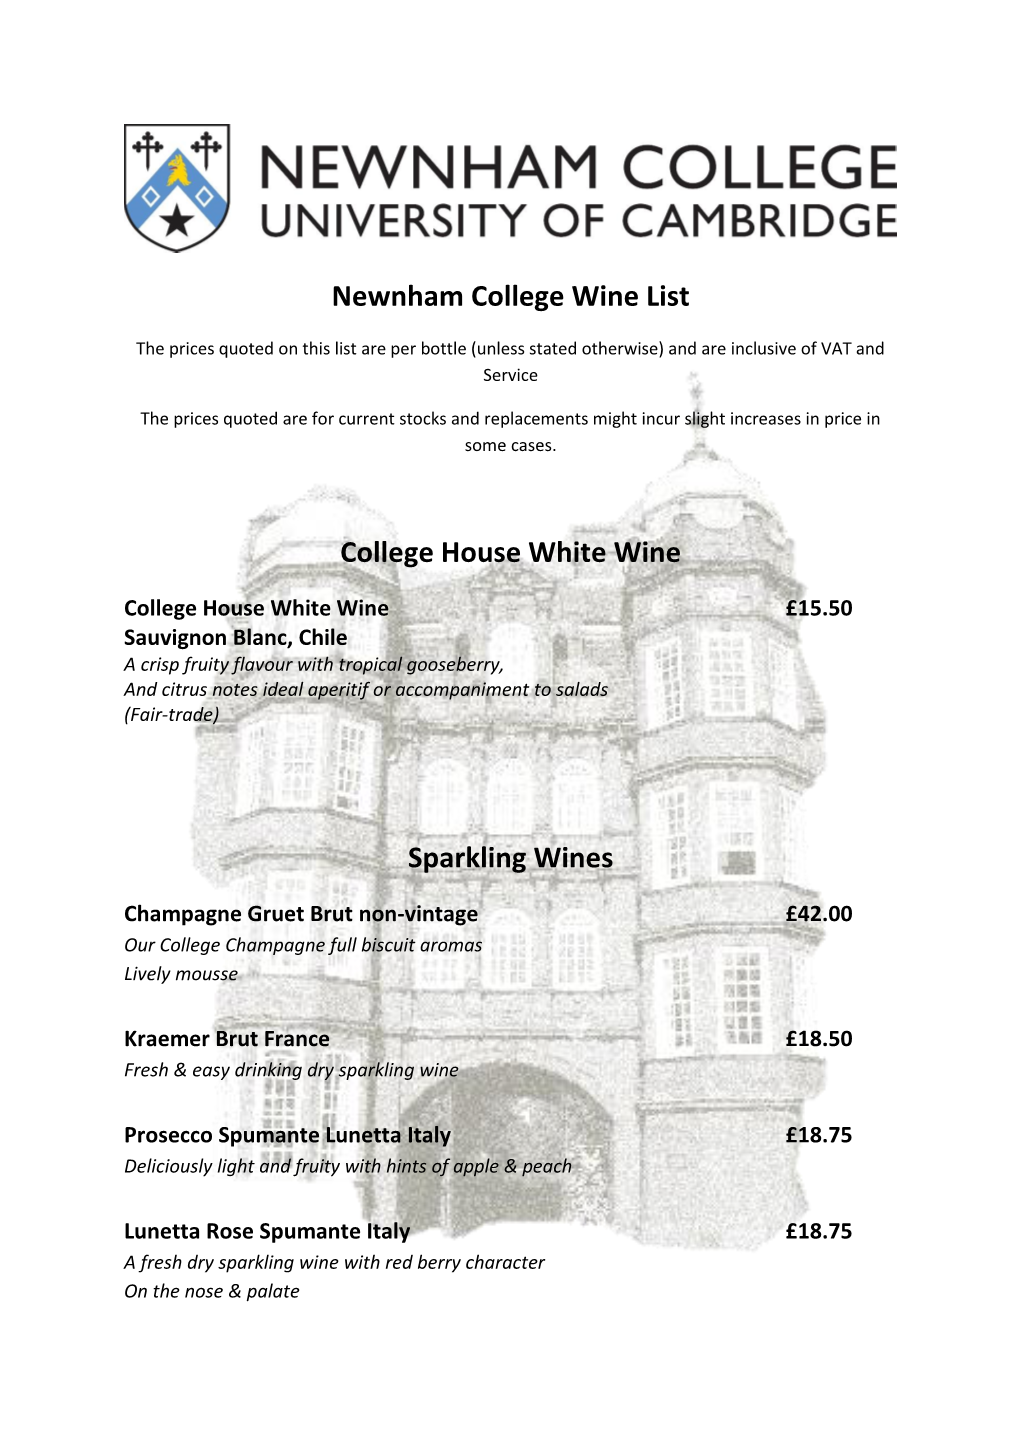 Newnham College Wine List College House White Wine Sparkling Wines